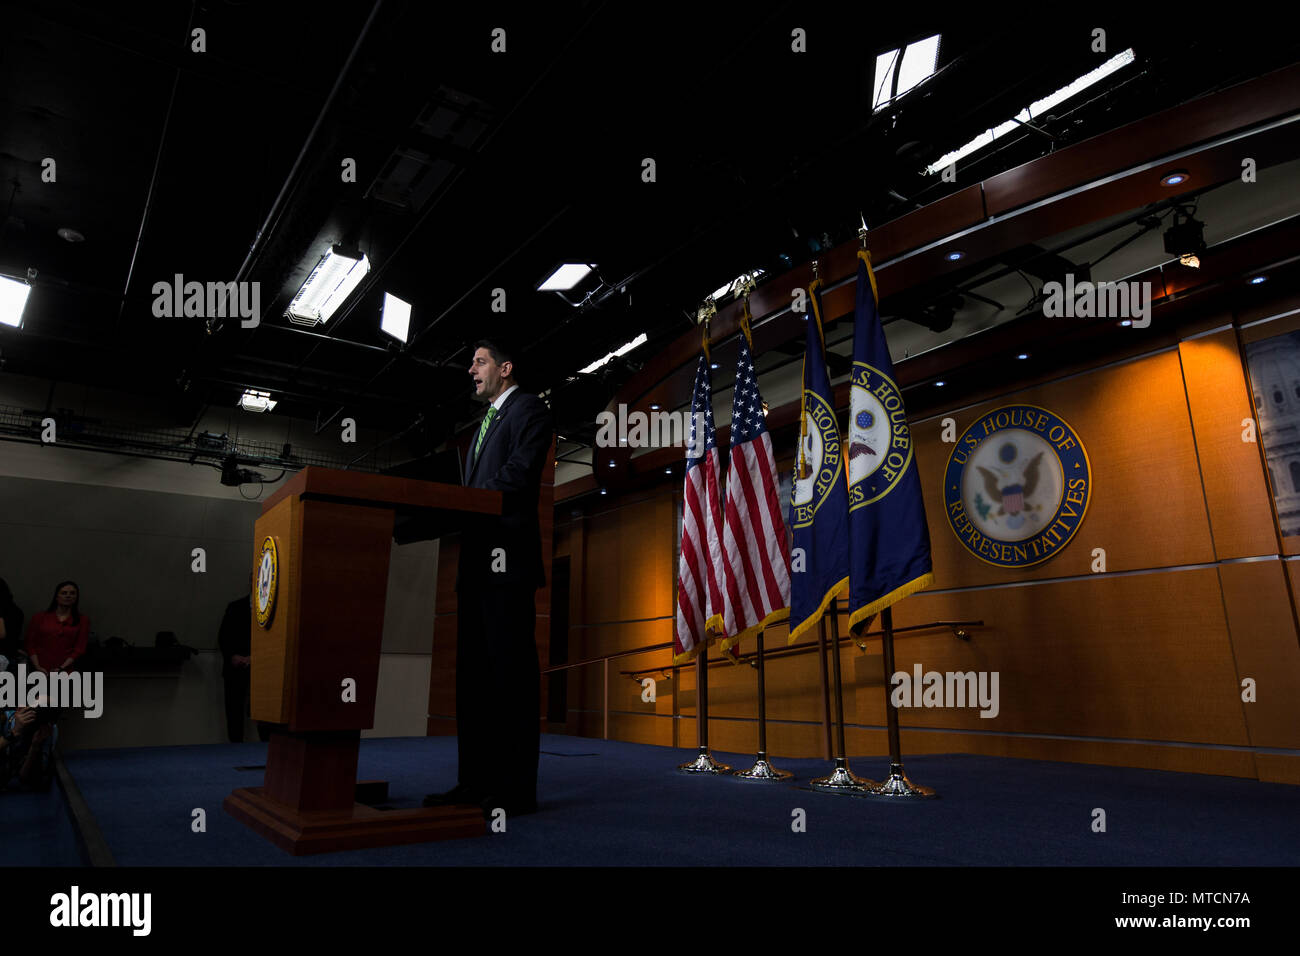 Chambre Le Président Paul Ryan Rép. (R-WI) parle au cours de sa conférence de presse hebdomadaire au Capitole. Banque D'Images